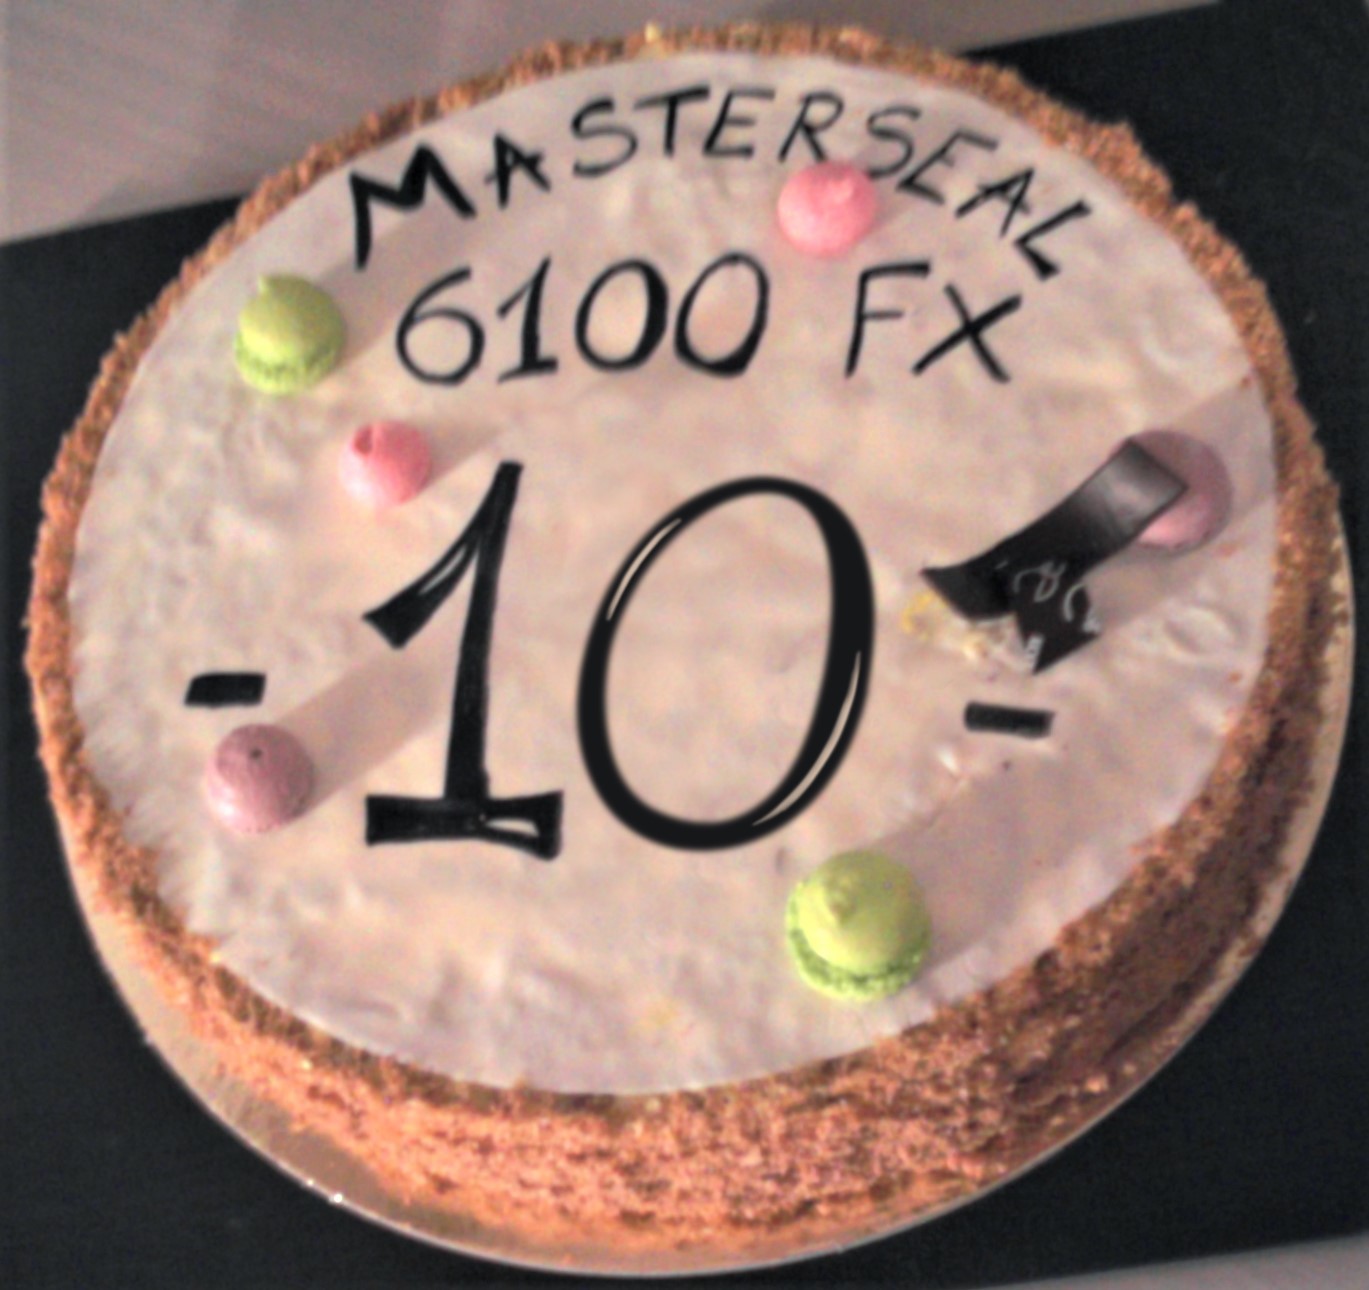 MasterSeal 6100 FX: 10 jaar ongeëvenaarde waterdichting en 